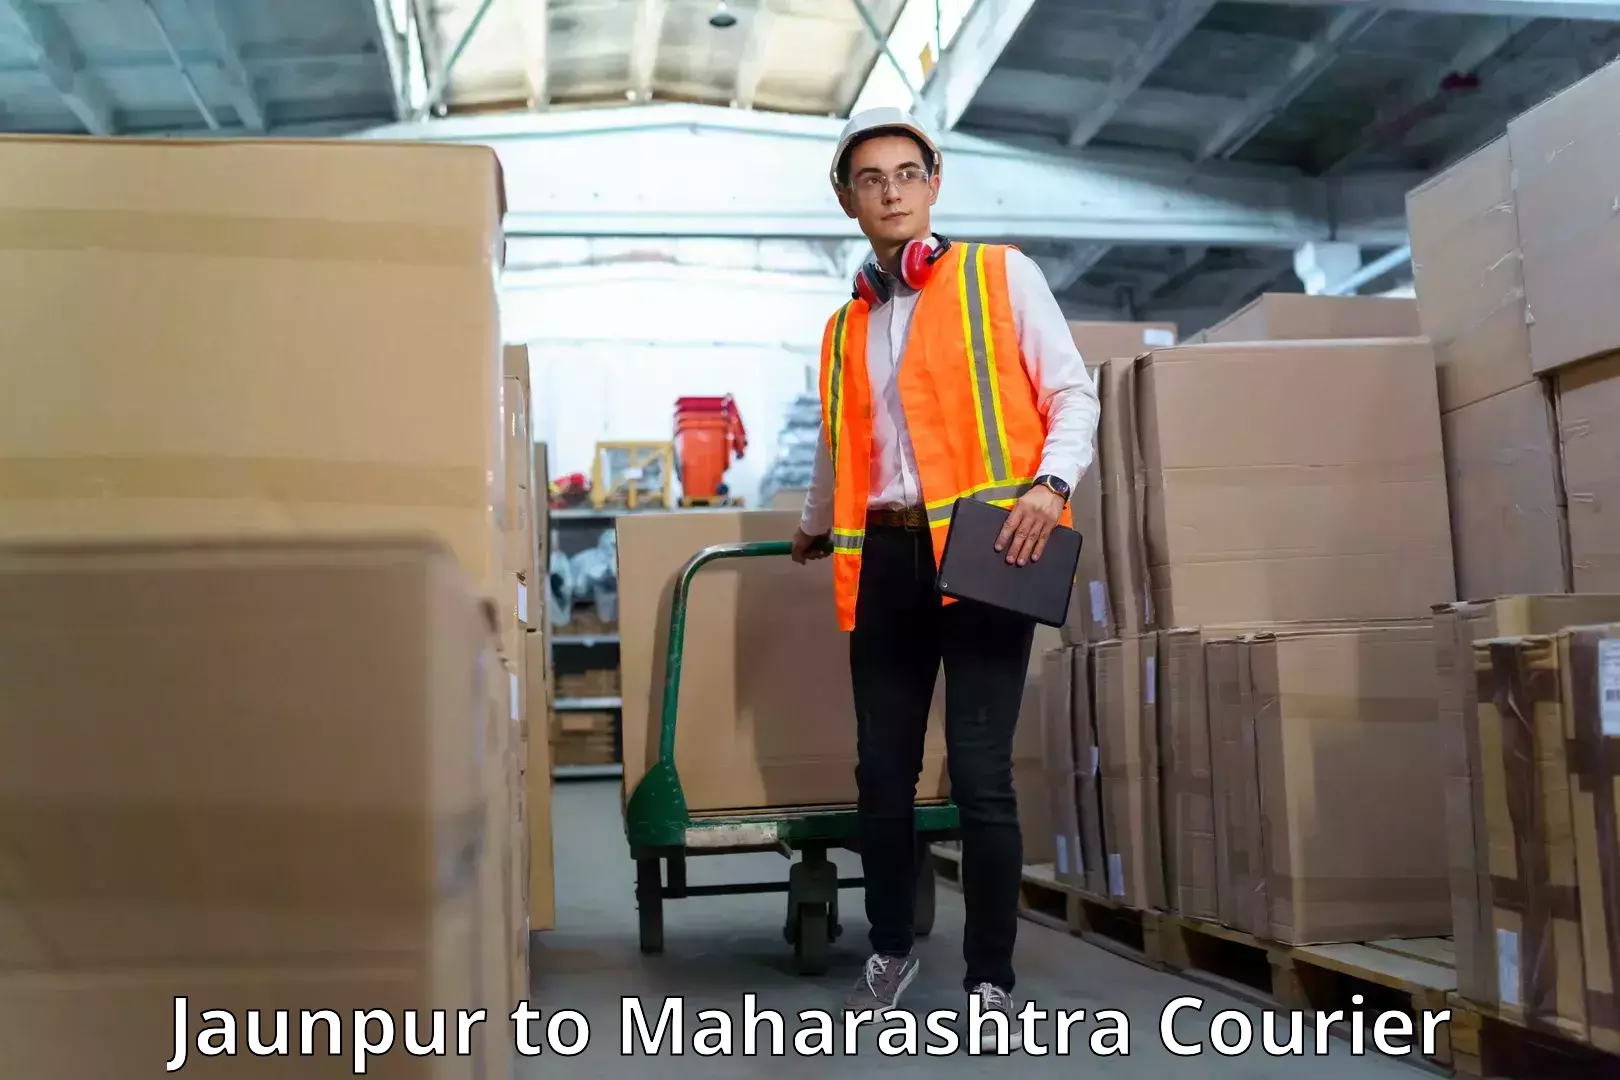 High-speed parcel service Jaunpur to Mumbai